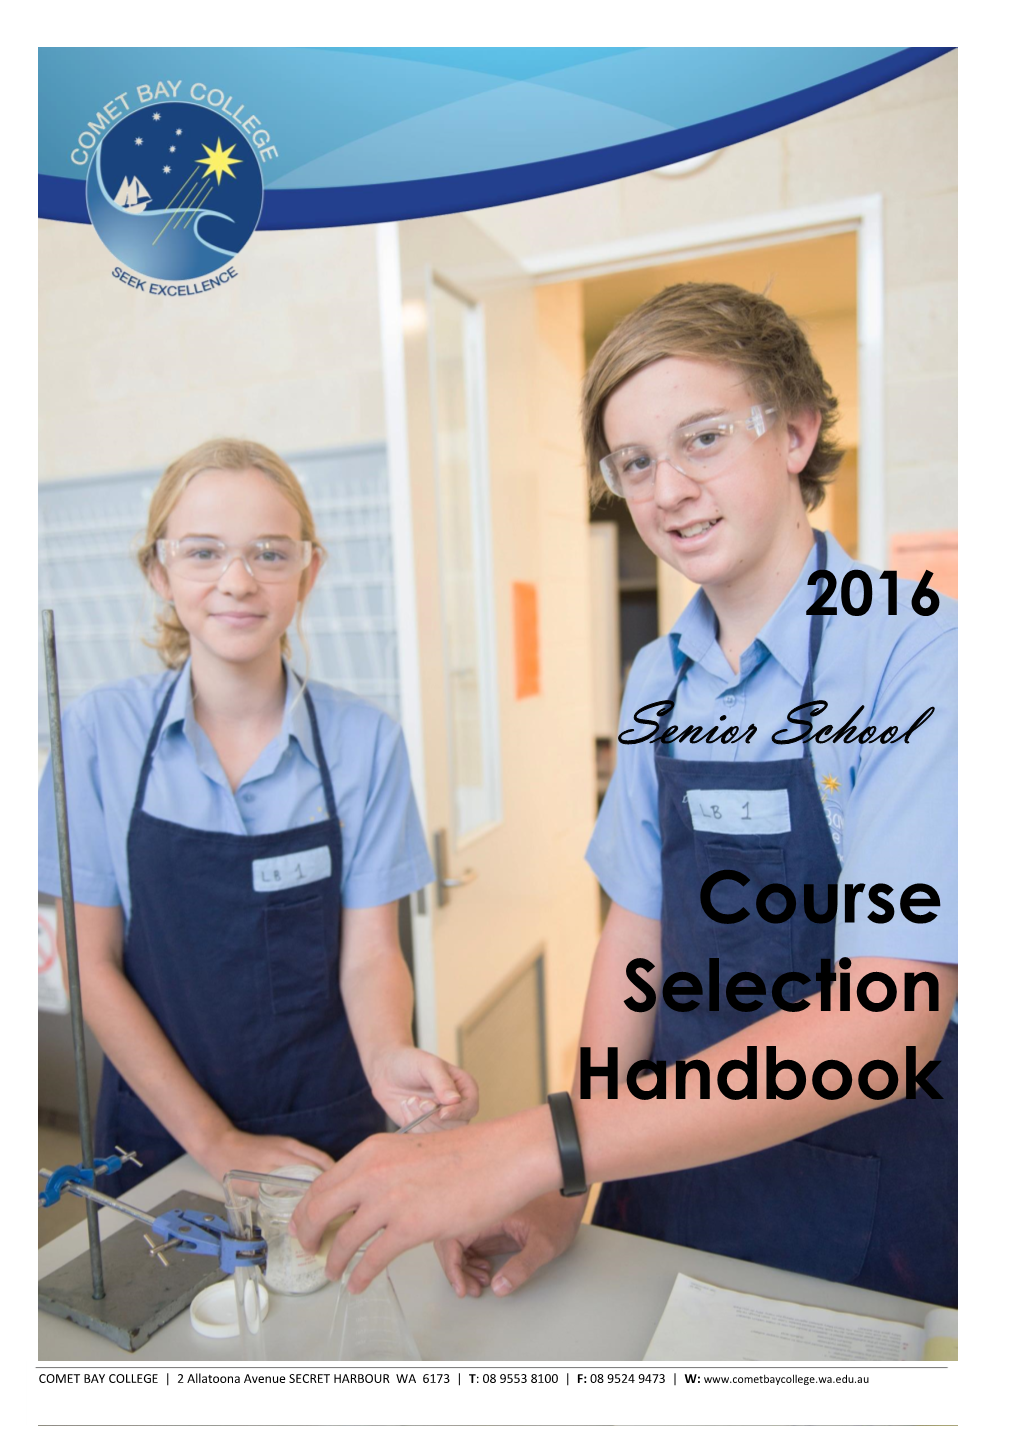 Course Selection Handbook